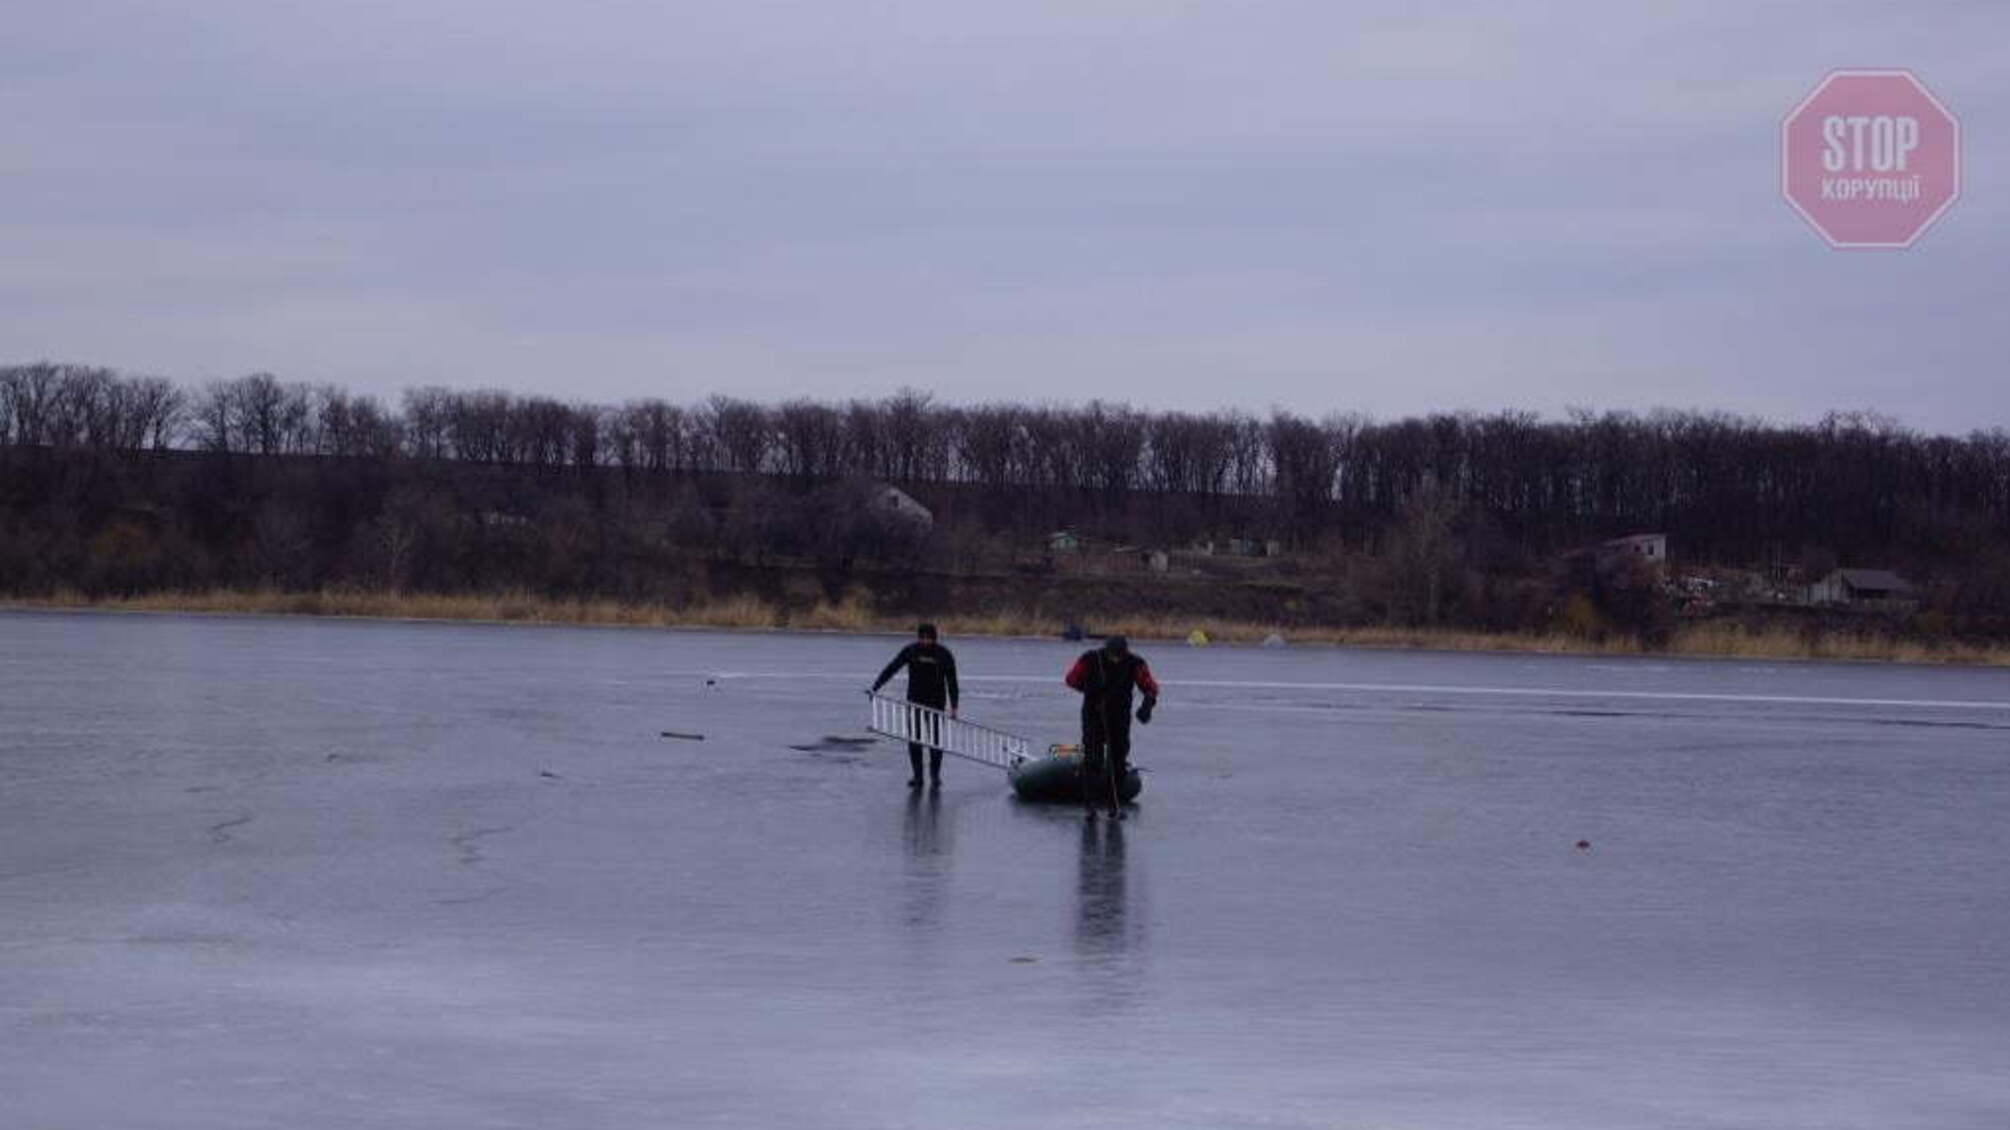 Новости Запорожья: Двое детей провалились под лед, спасатели нашли тело мальчика (фото)